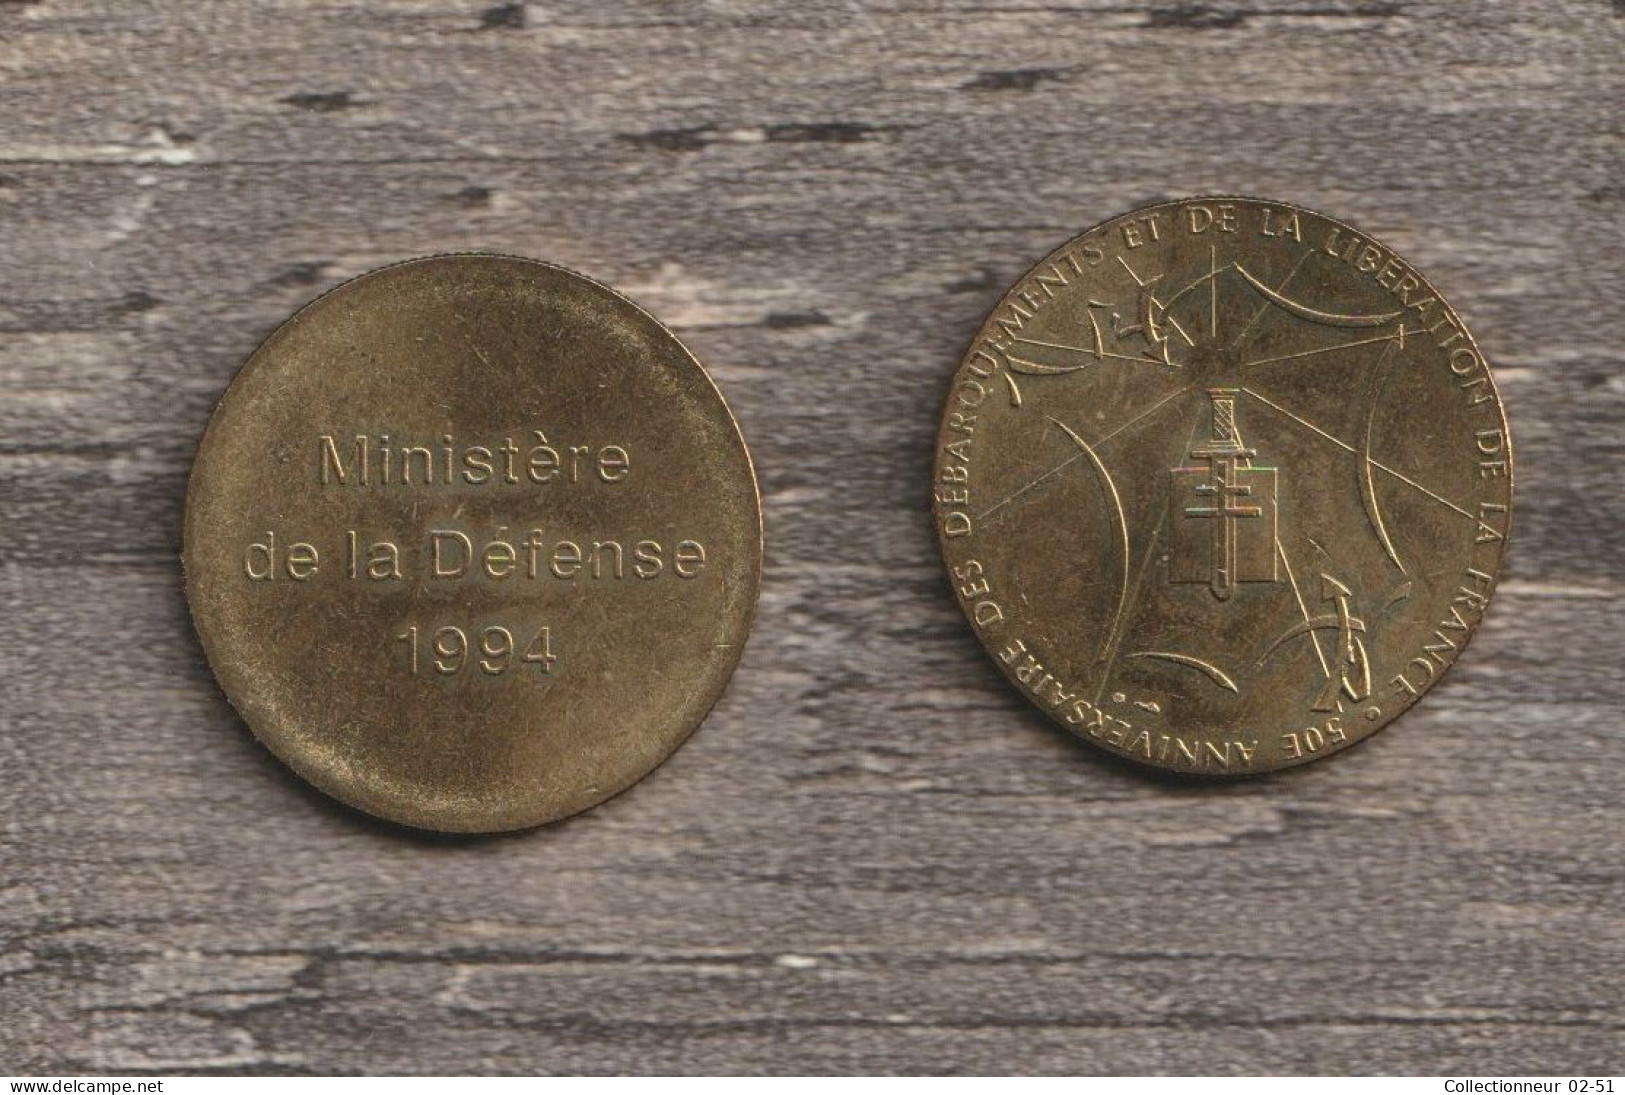 Monnaie De Paris : 50ème Anniversaire Des Débarquements Et De La Libération De La France - Ministère De La Défense 1994 - Ohne Datum